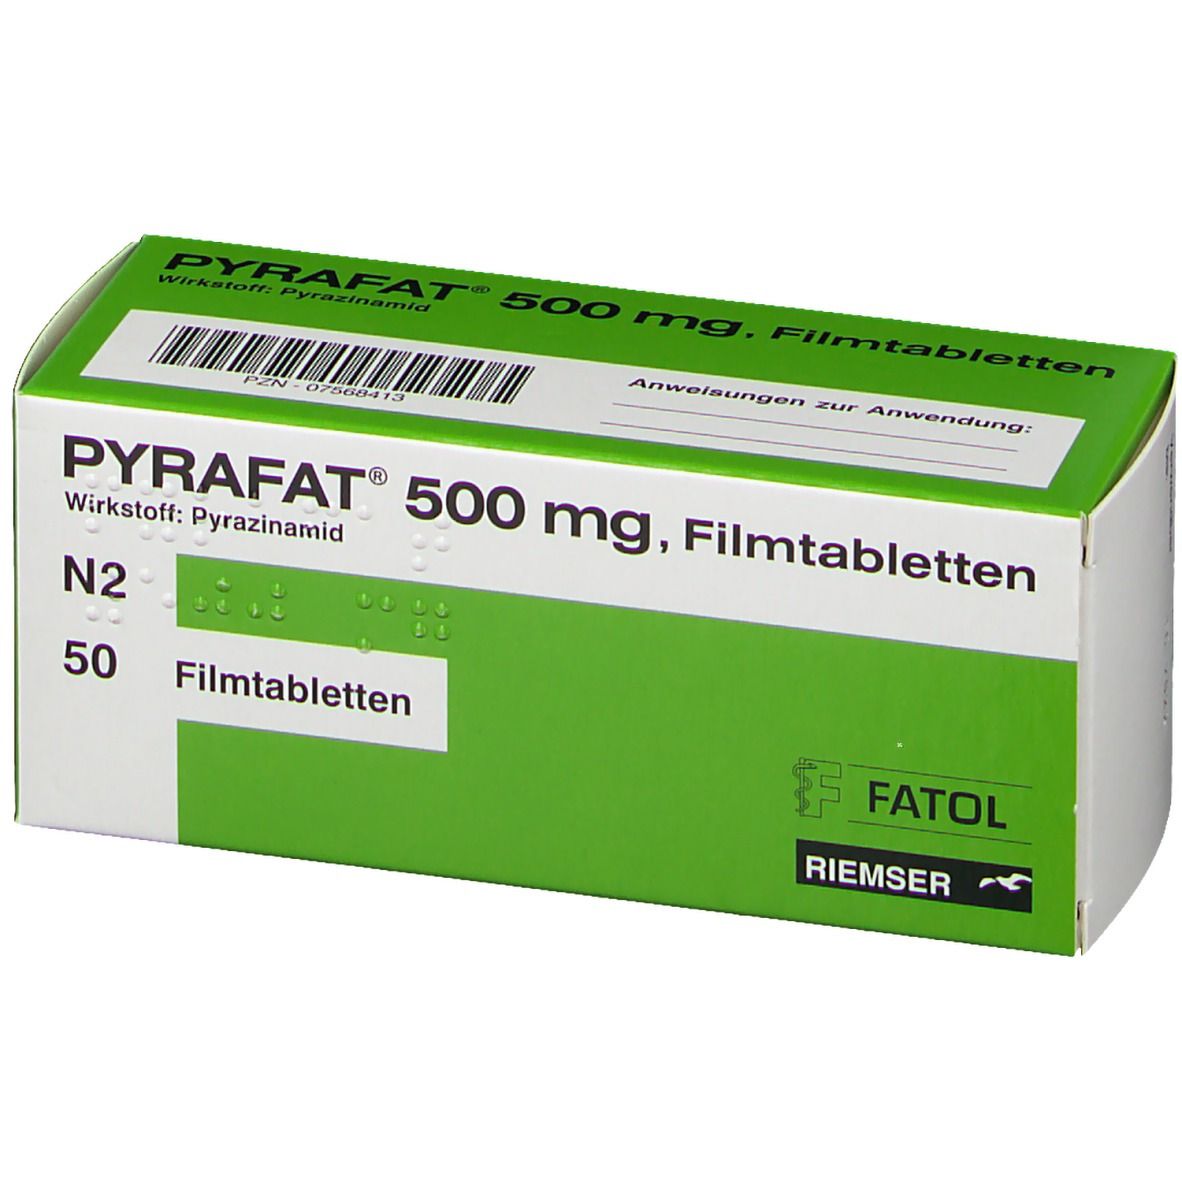 PYRAFAT® 500 mg